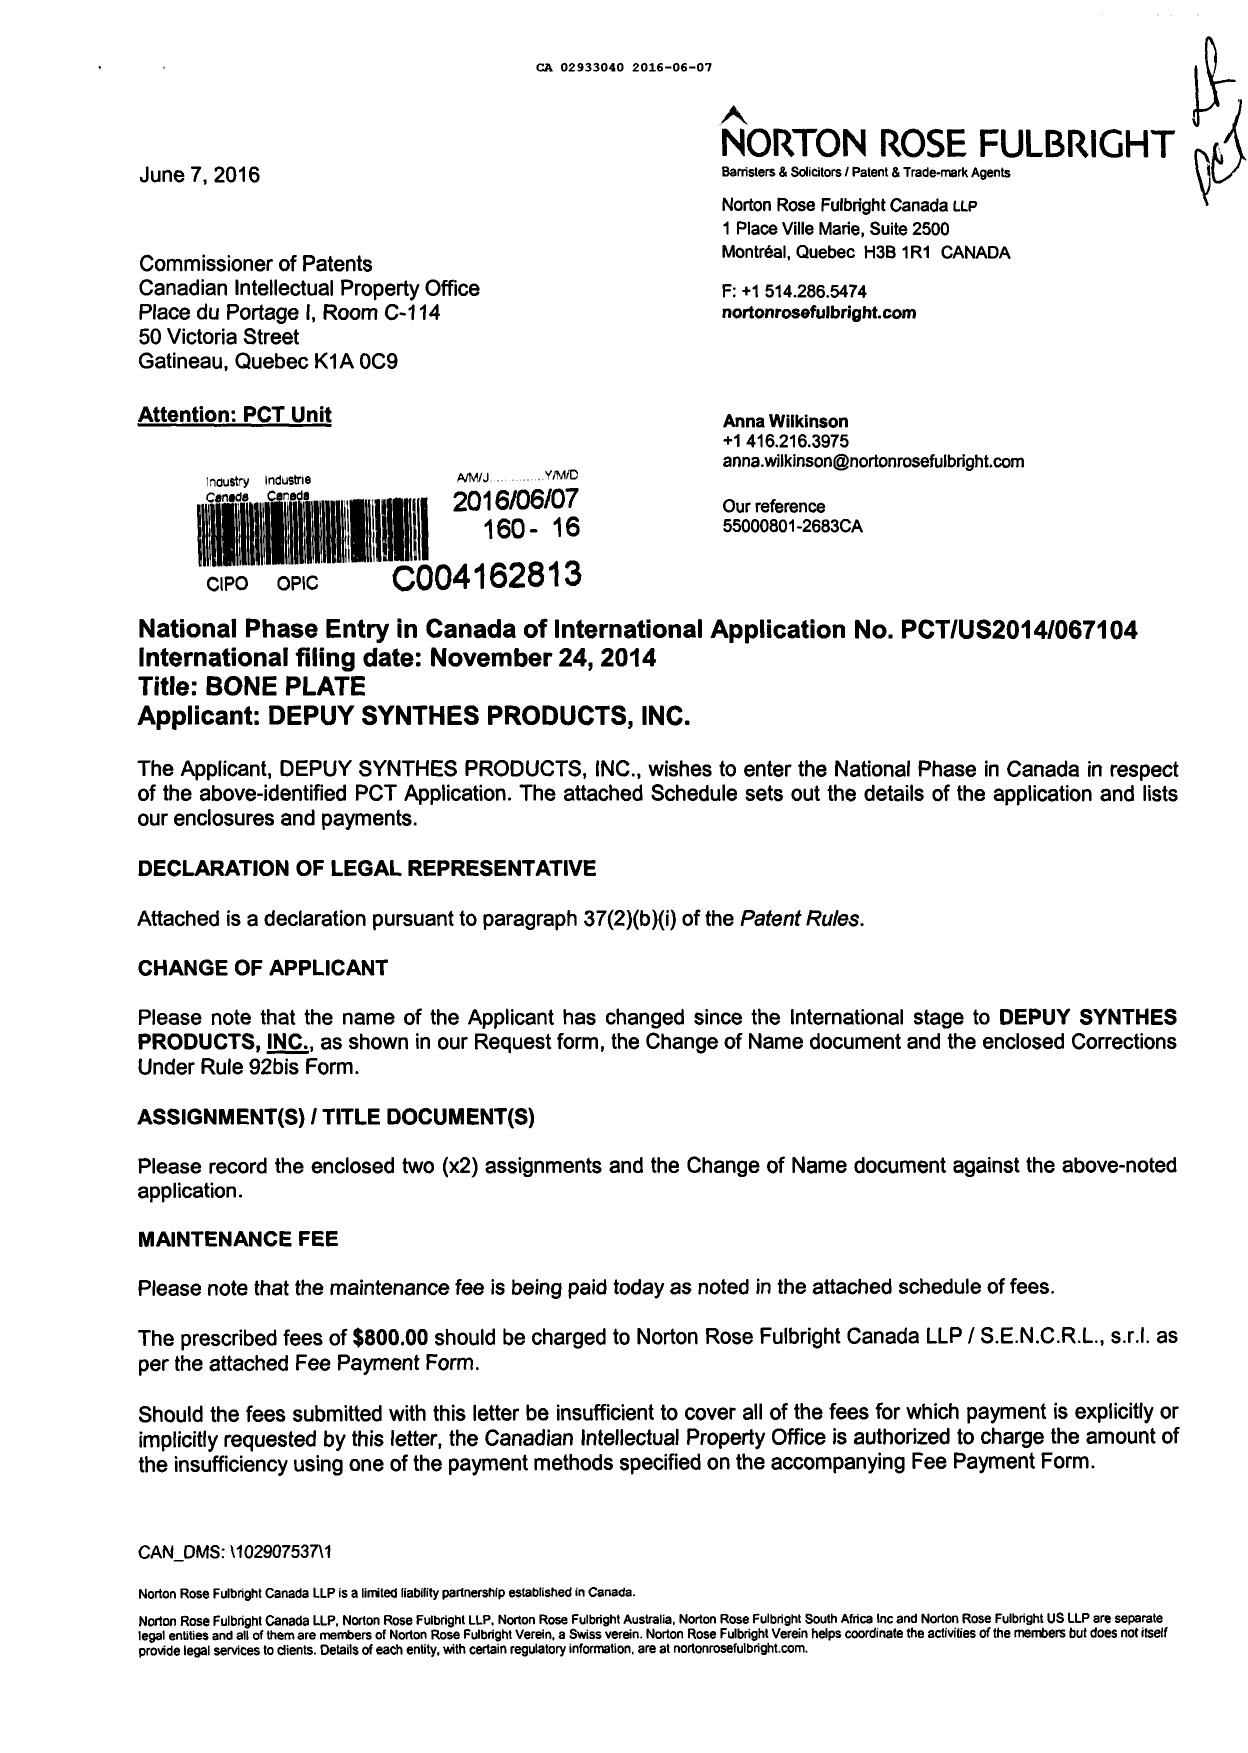 Document de brevet canadien 2933040. Demande d'entrée en phase nationale 20151207. Image 1 de 18